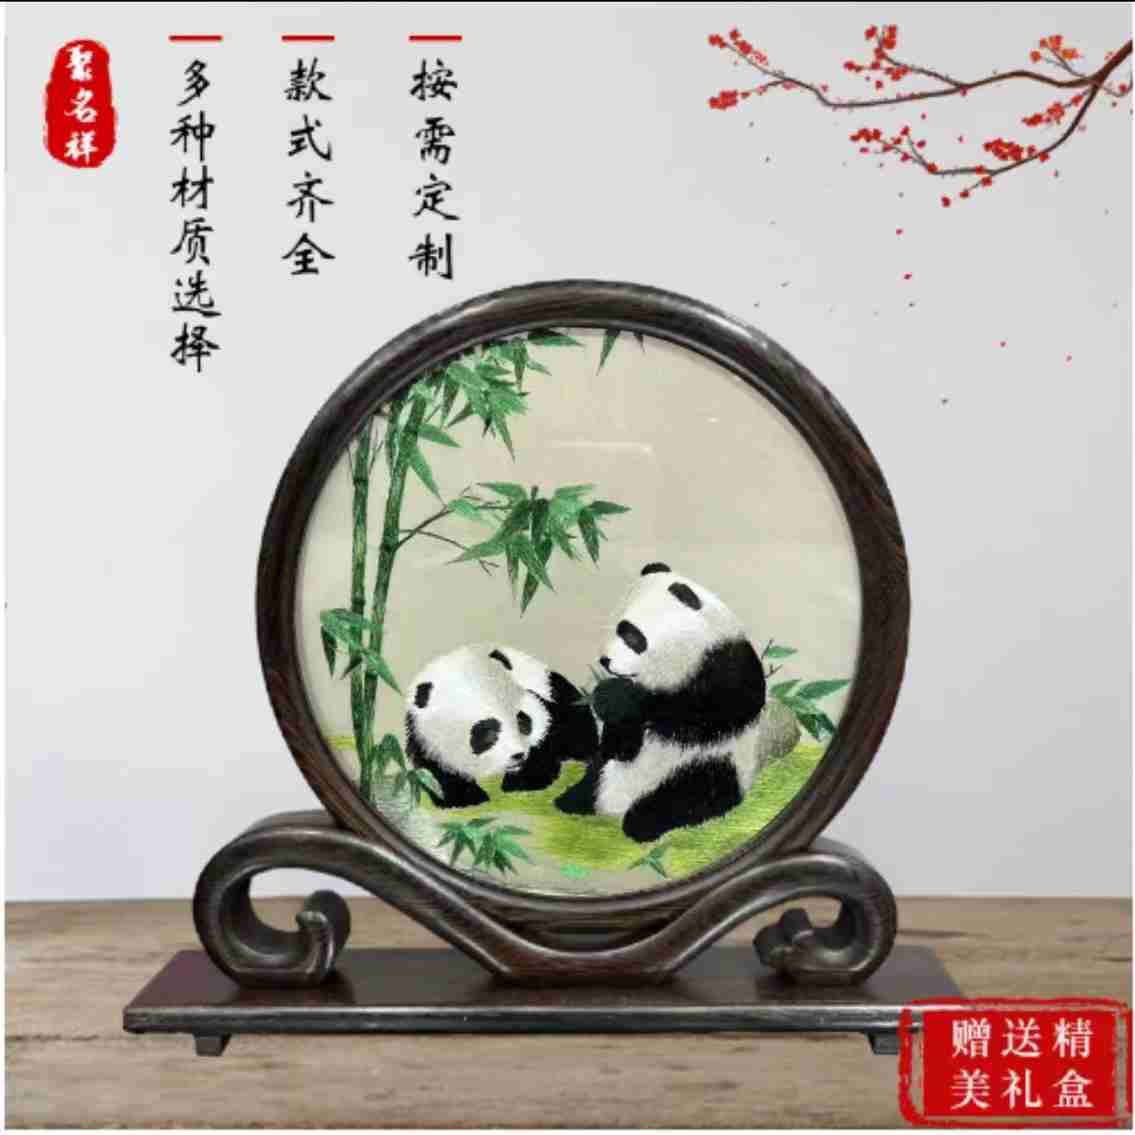 苏绣成品刺绣国宝熊猫中国民族特色纪念品